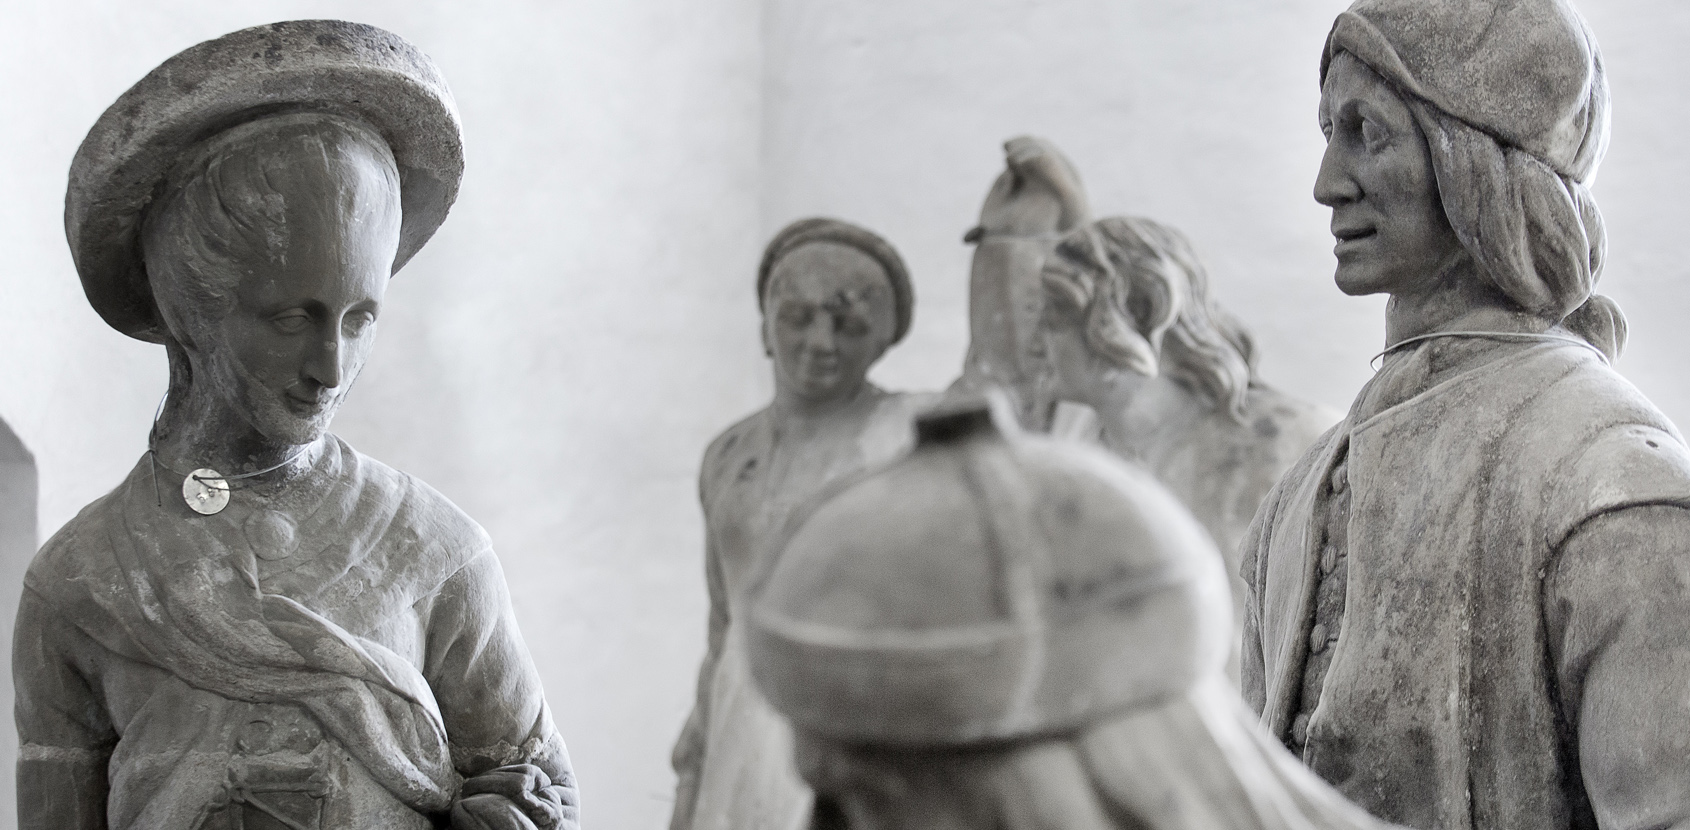 De oprindelige skulpturer fra Nordmandsdalen står i Kongernes Lapidarium. Foto: Thorkild Jensen